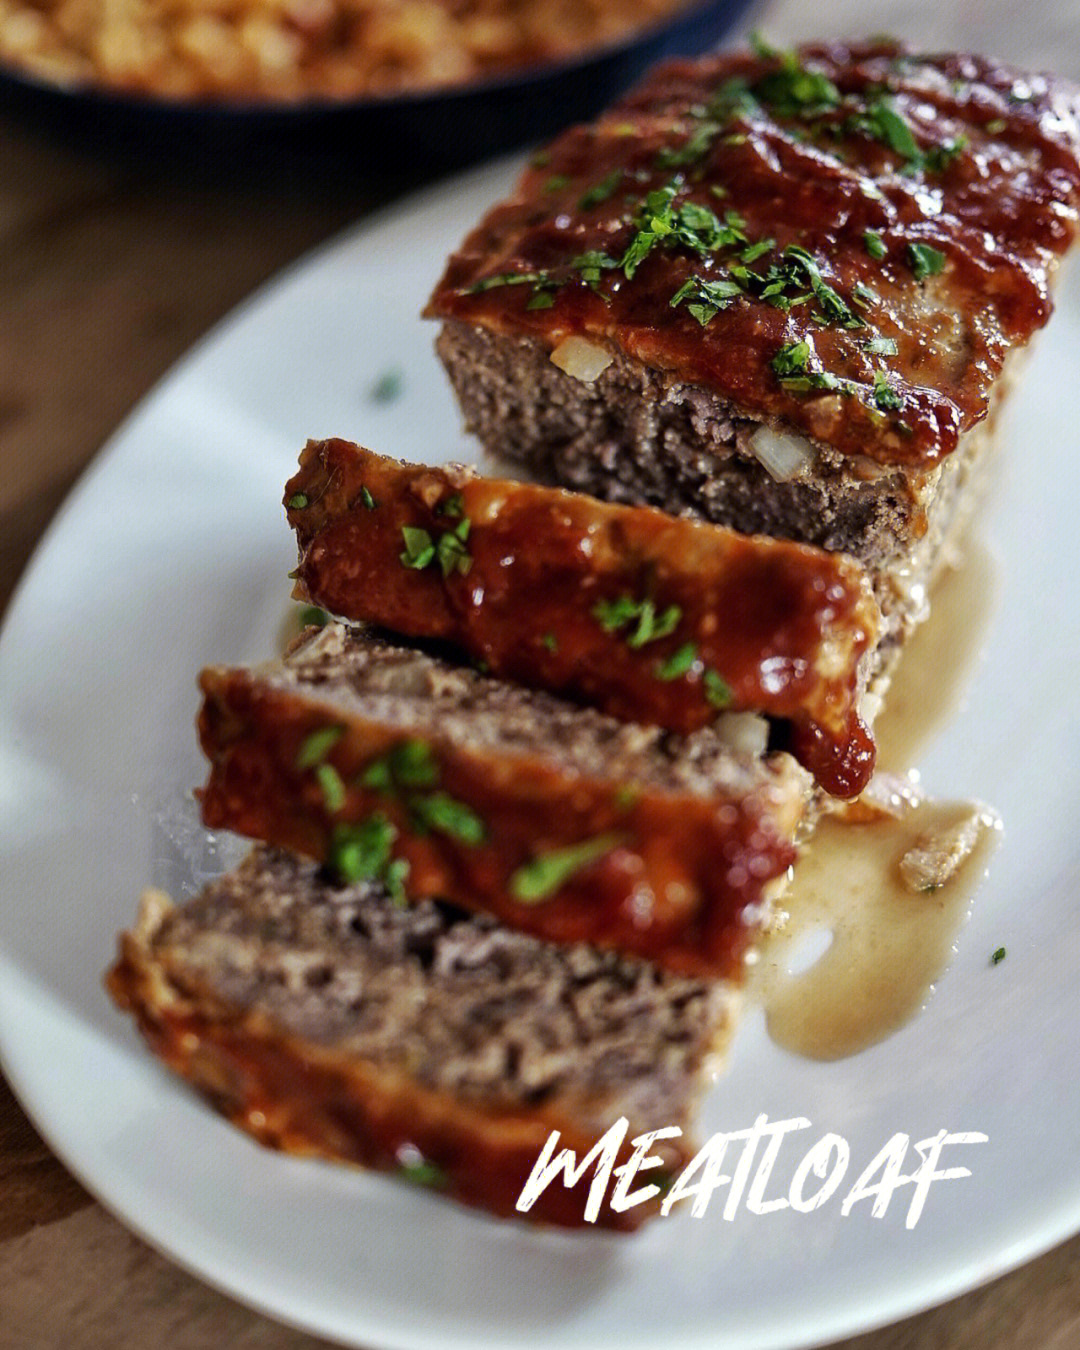 meatloaf 是美国经典家庭食谱多汁柔软,加上酸甜番茄